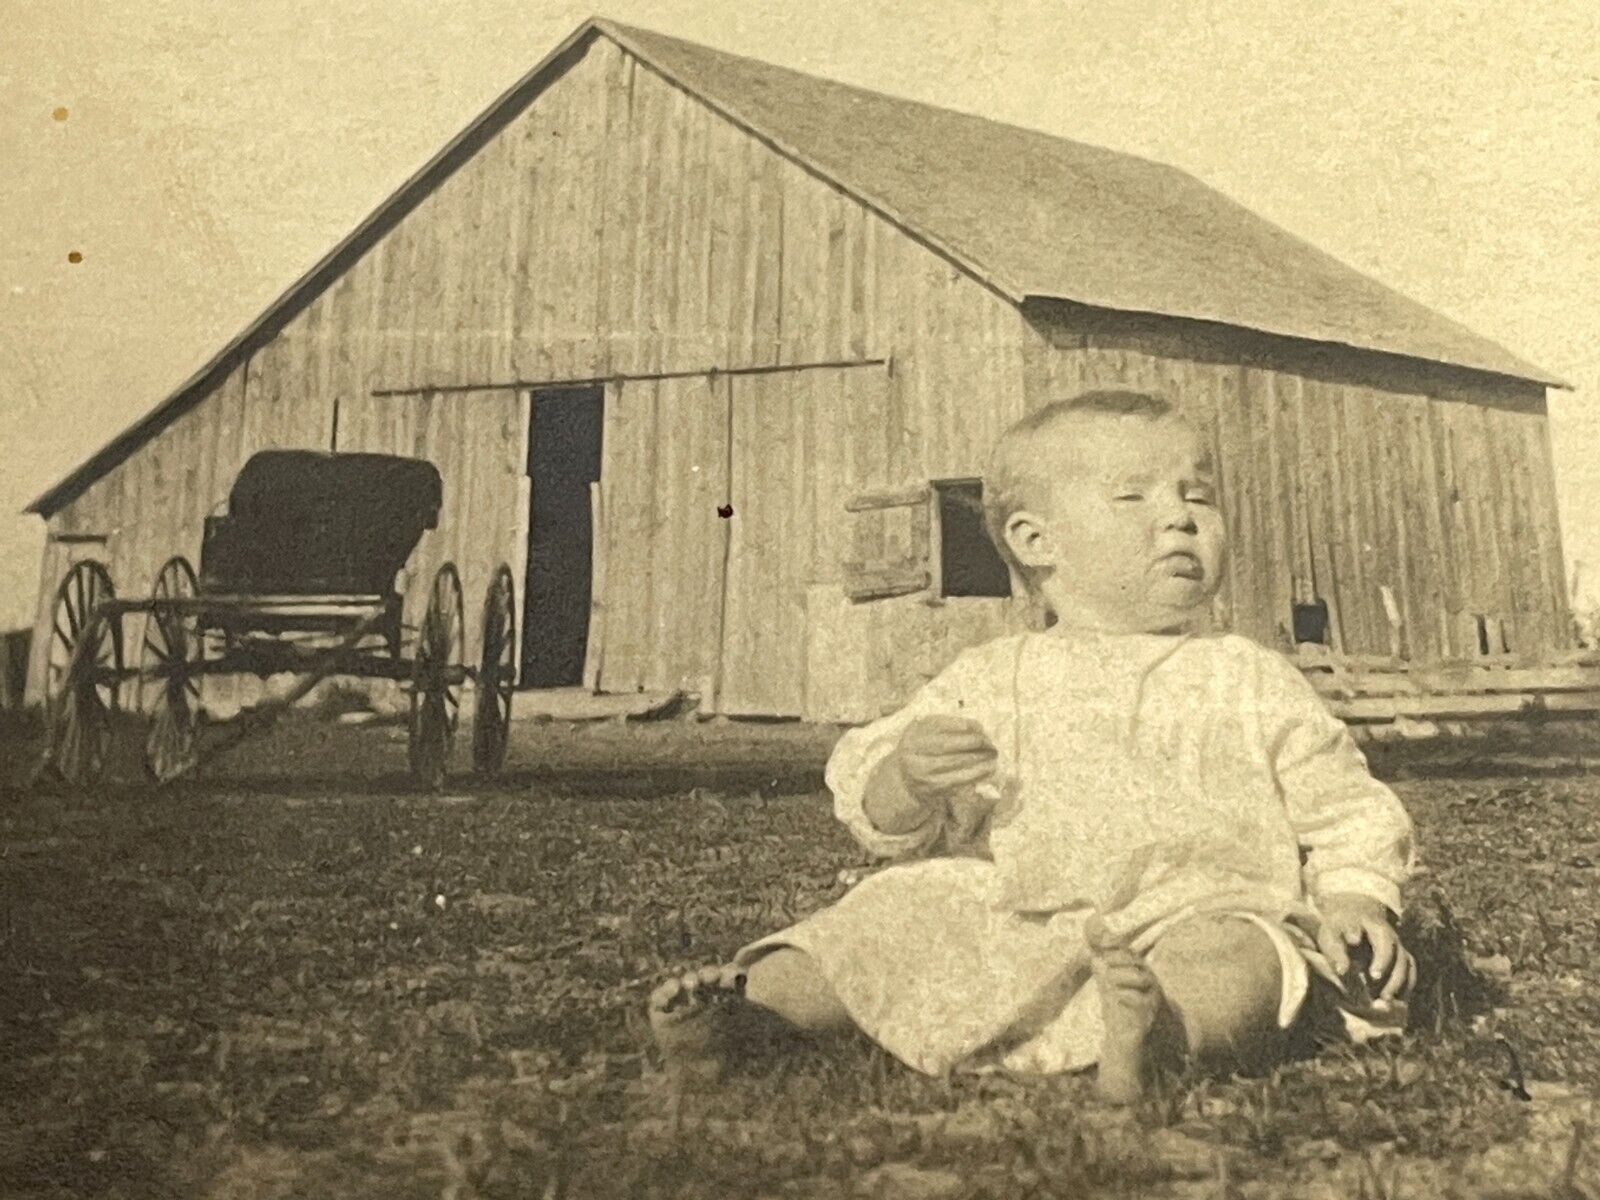 H7 Photo Postcard Baby Artistic POV On Farm Homestead Buggy Barn 